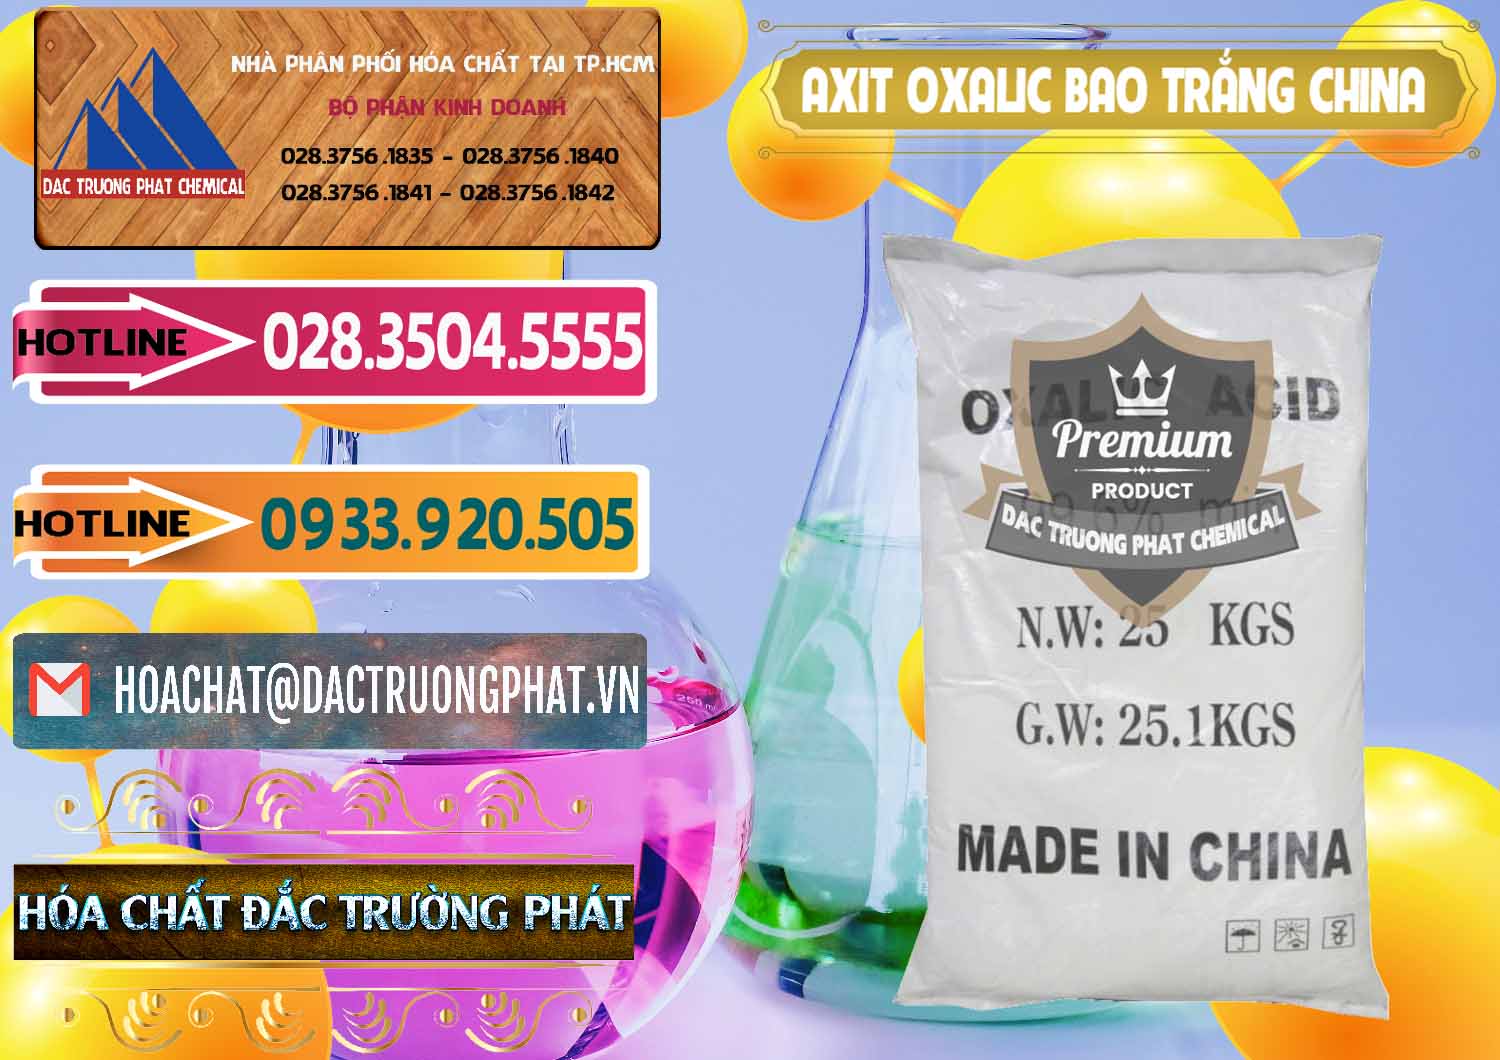 Cung cấp và bán Acid Oxalic – Axit Oxalic 99.6% Bao Trắng Trung Quốc China - 0270 - Nơi phân phối & cung cấp hóa chất tại TP.HCM - dactruongphat.vn